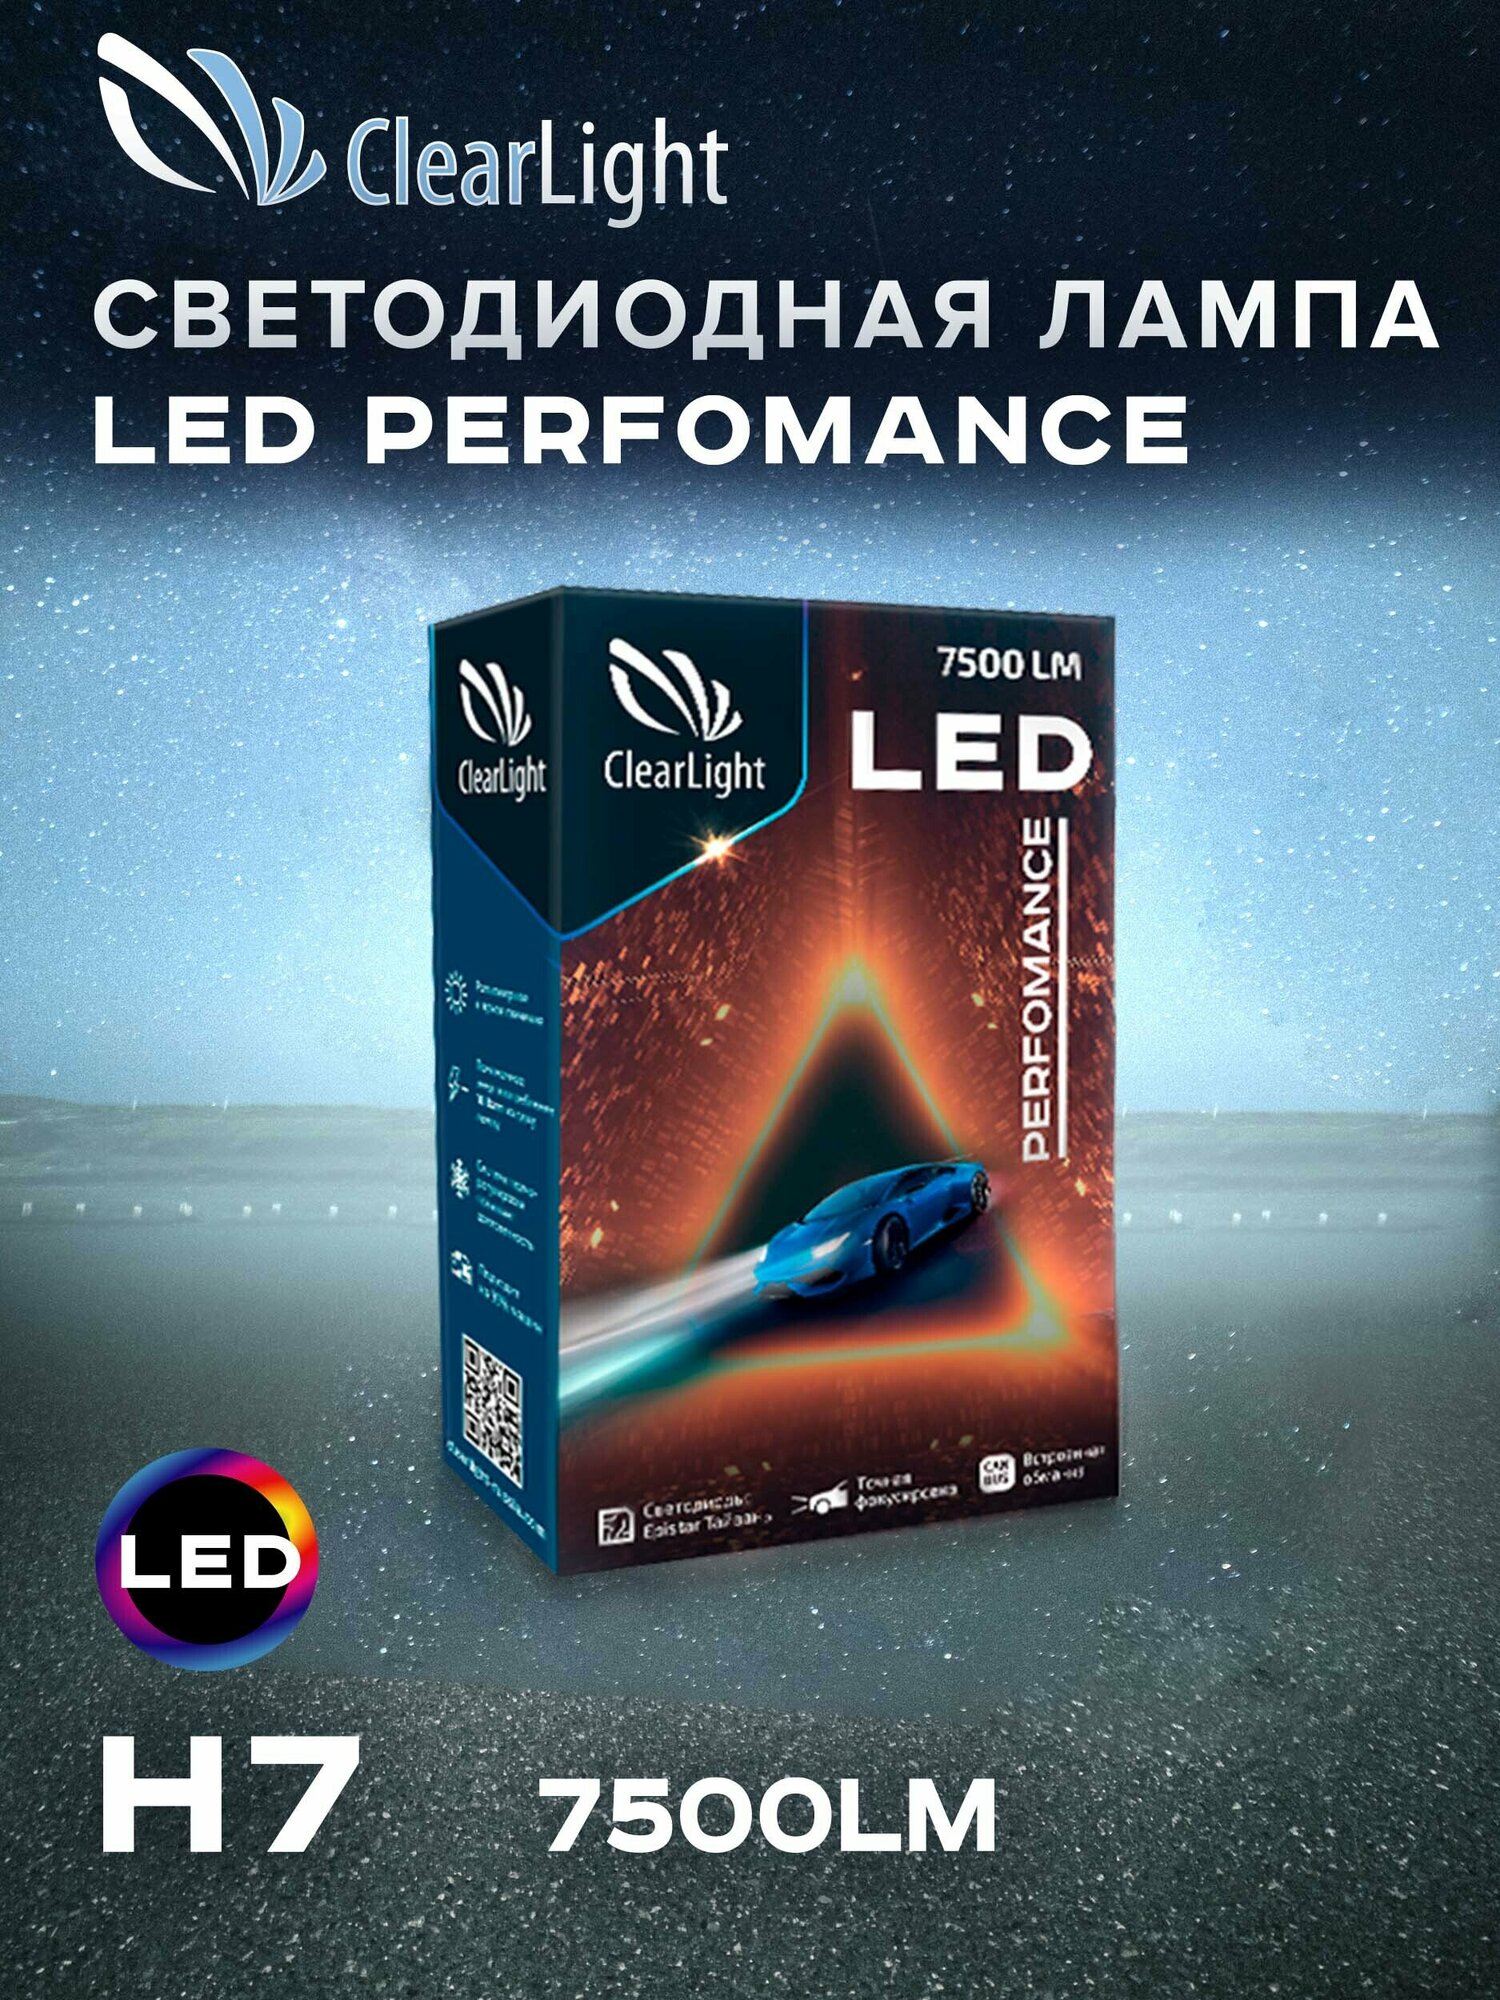 Cветодиодные лампы для автомобилей / для авто / LED Clearlight Performance / Canbus / 6000K / 7500lm / 18W / комплект 2шт